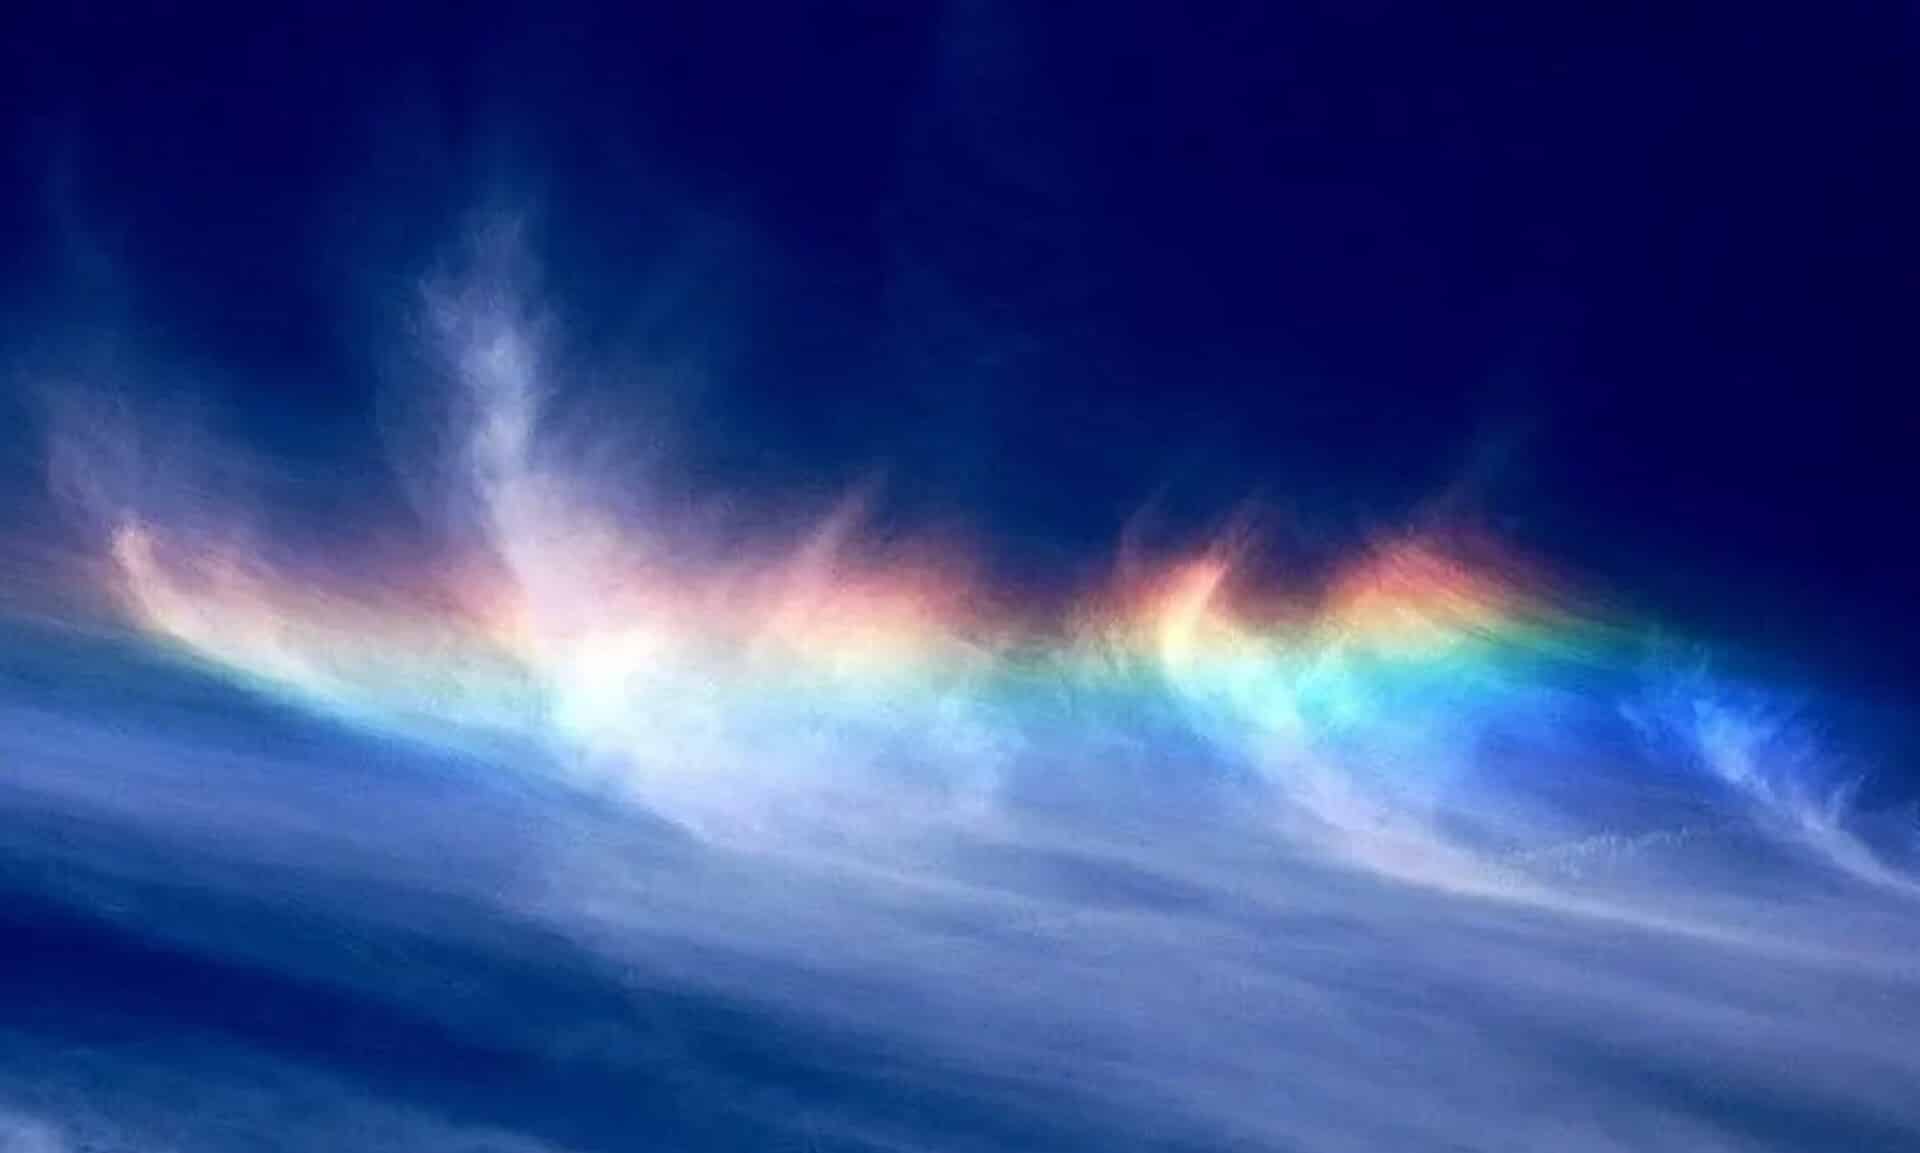 Τι-είναι-το-fire-rainbow-–-Ο-Θοδωρής-Κολύδας-εξηγεί-το-σπάνιο-φαινόμενο-που-εμφανίστηκε-στον-ουρανό